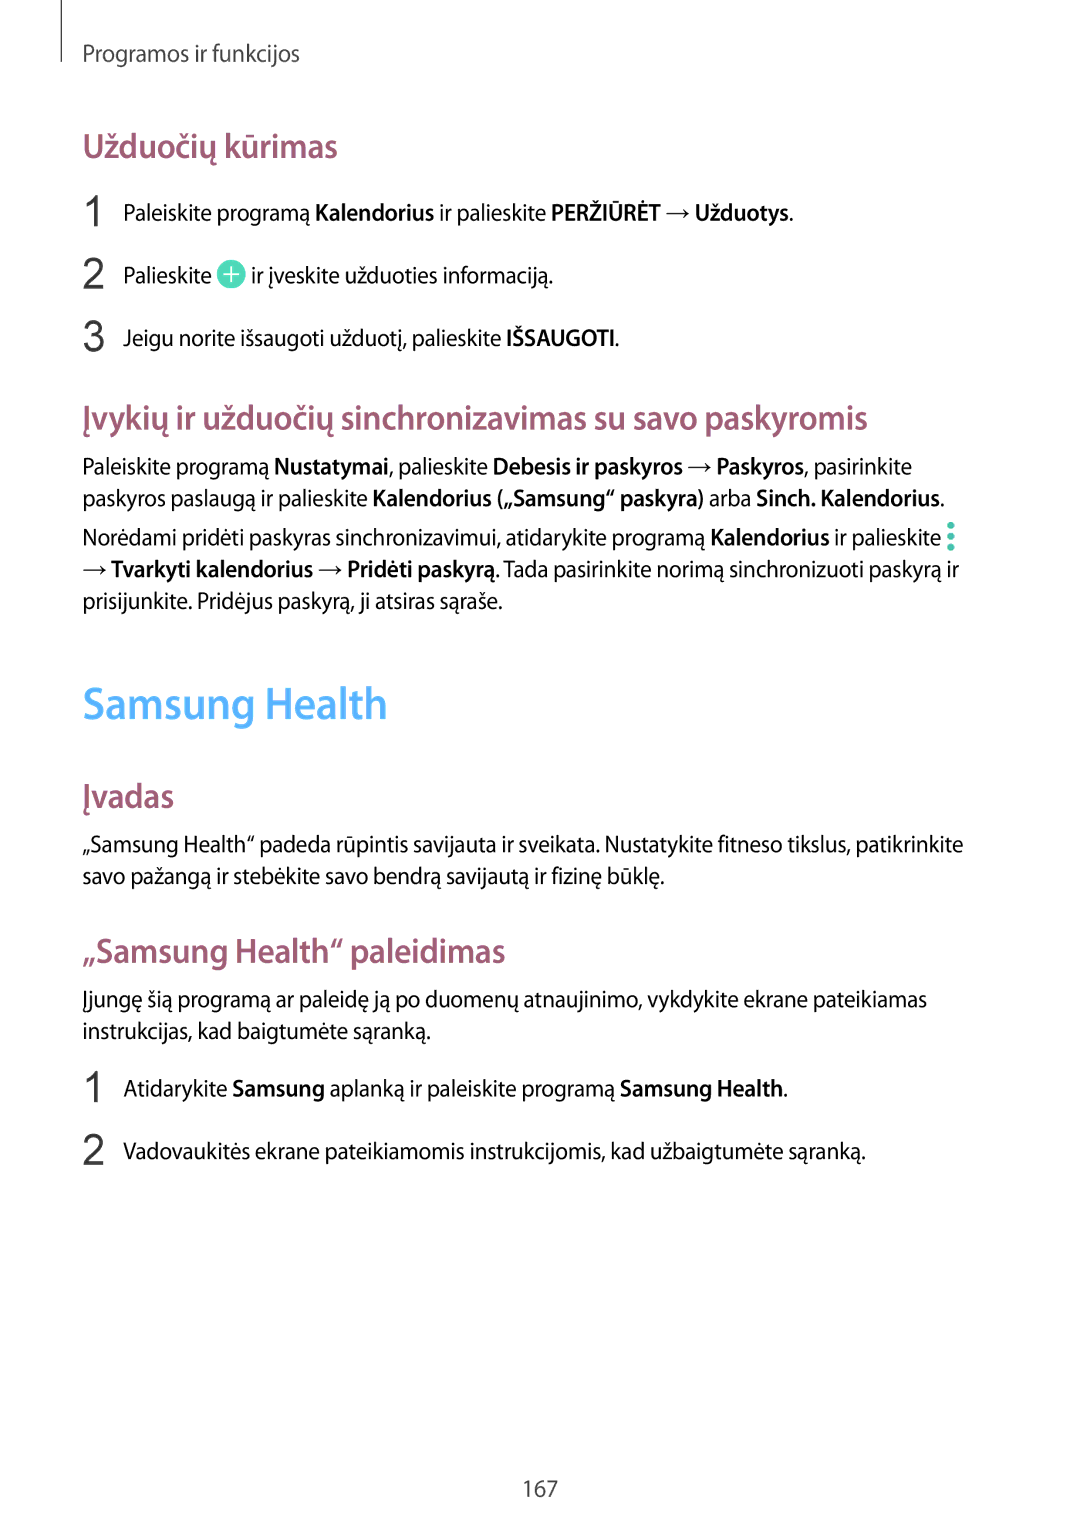 Samsung SM-N950FZDDSEB manual Samsung Health, Užduočių kūrimas, Įvykių ir užduočių sinchronizavimas su savo paskyromis 